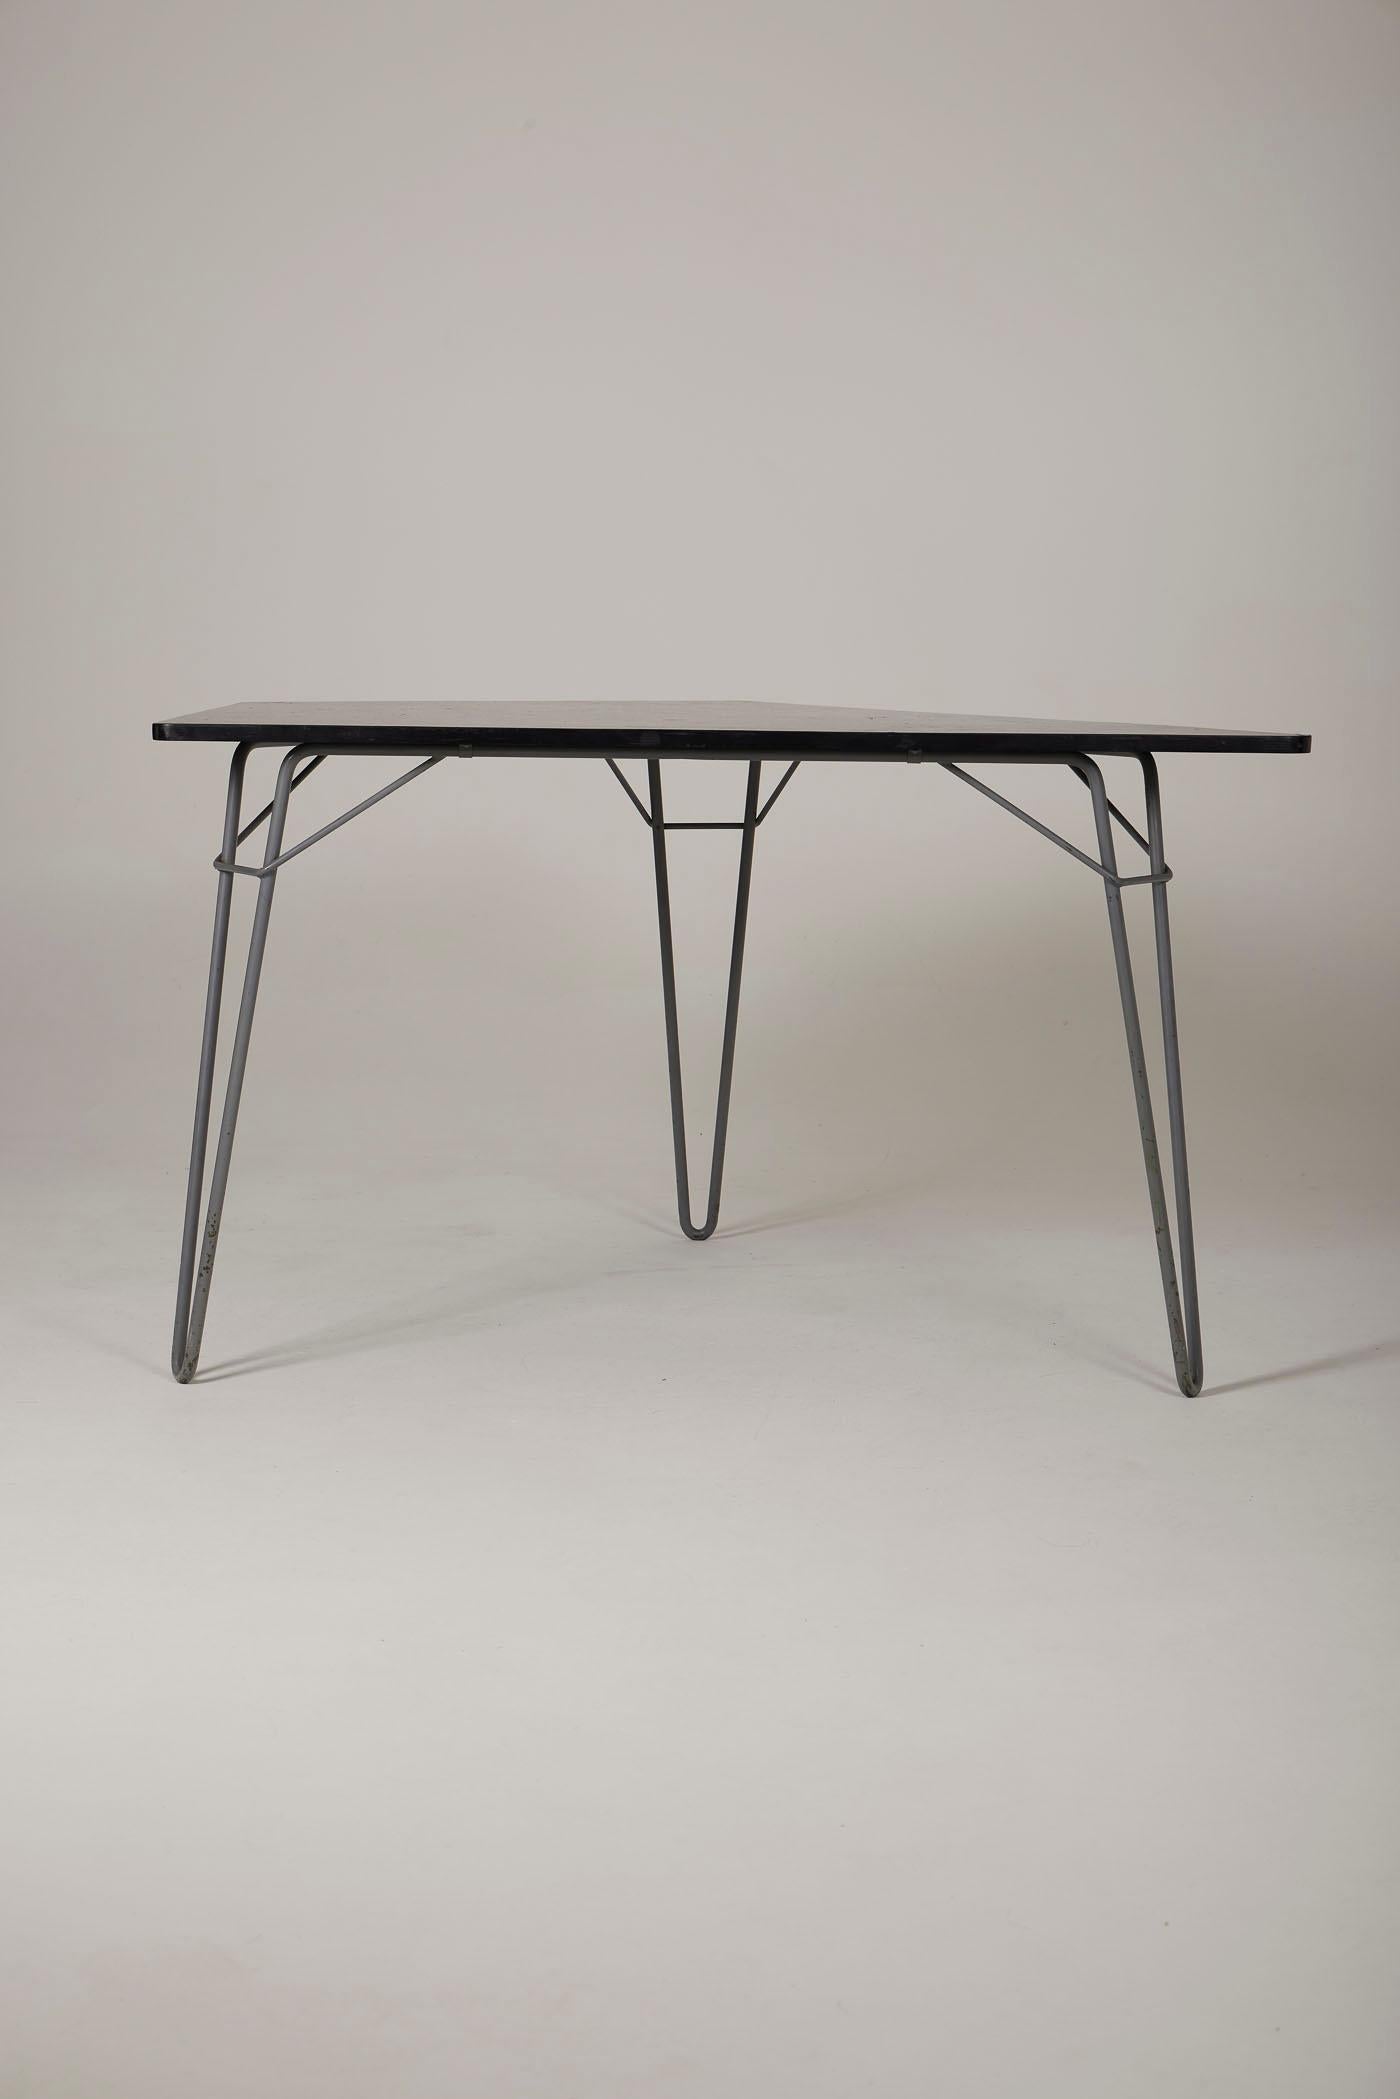 Table à manger T1, modèle Tangram, conçue par Willy Van der Meeren pour Tubax, des années 1950. Cette table est composée d'un plateau en bois teinté noir et d'un piètement en métal laqué noir. En très bon état.
DV382